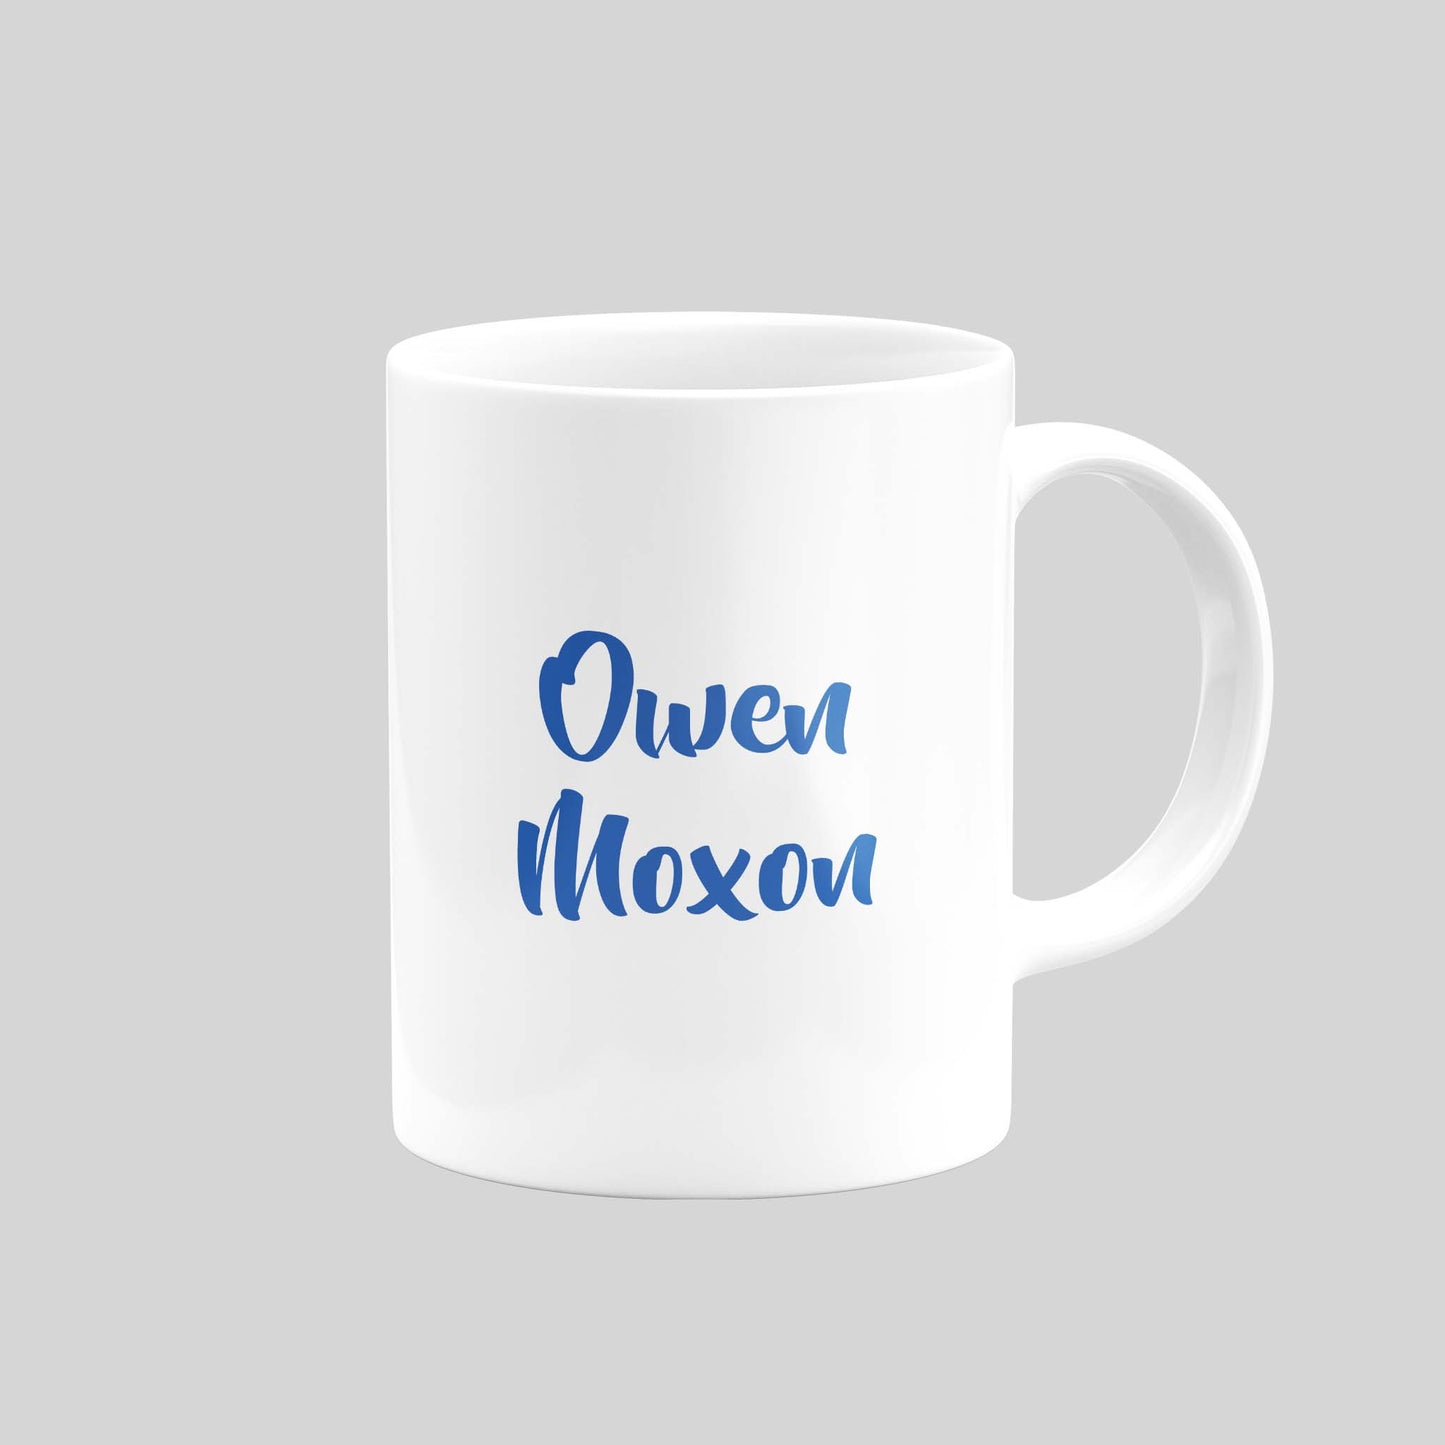 Owen Moxon Mug